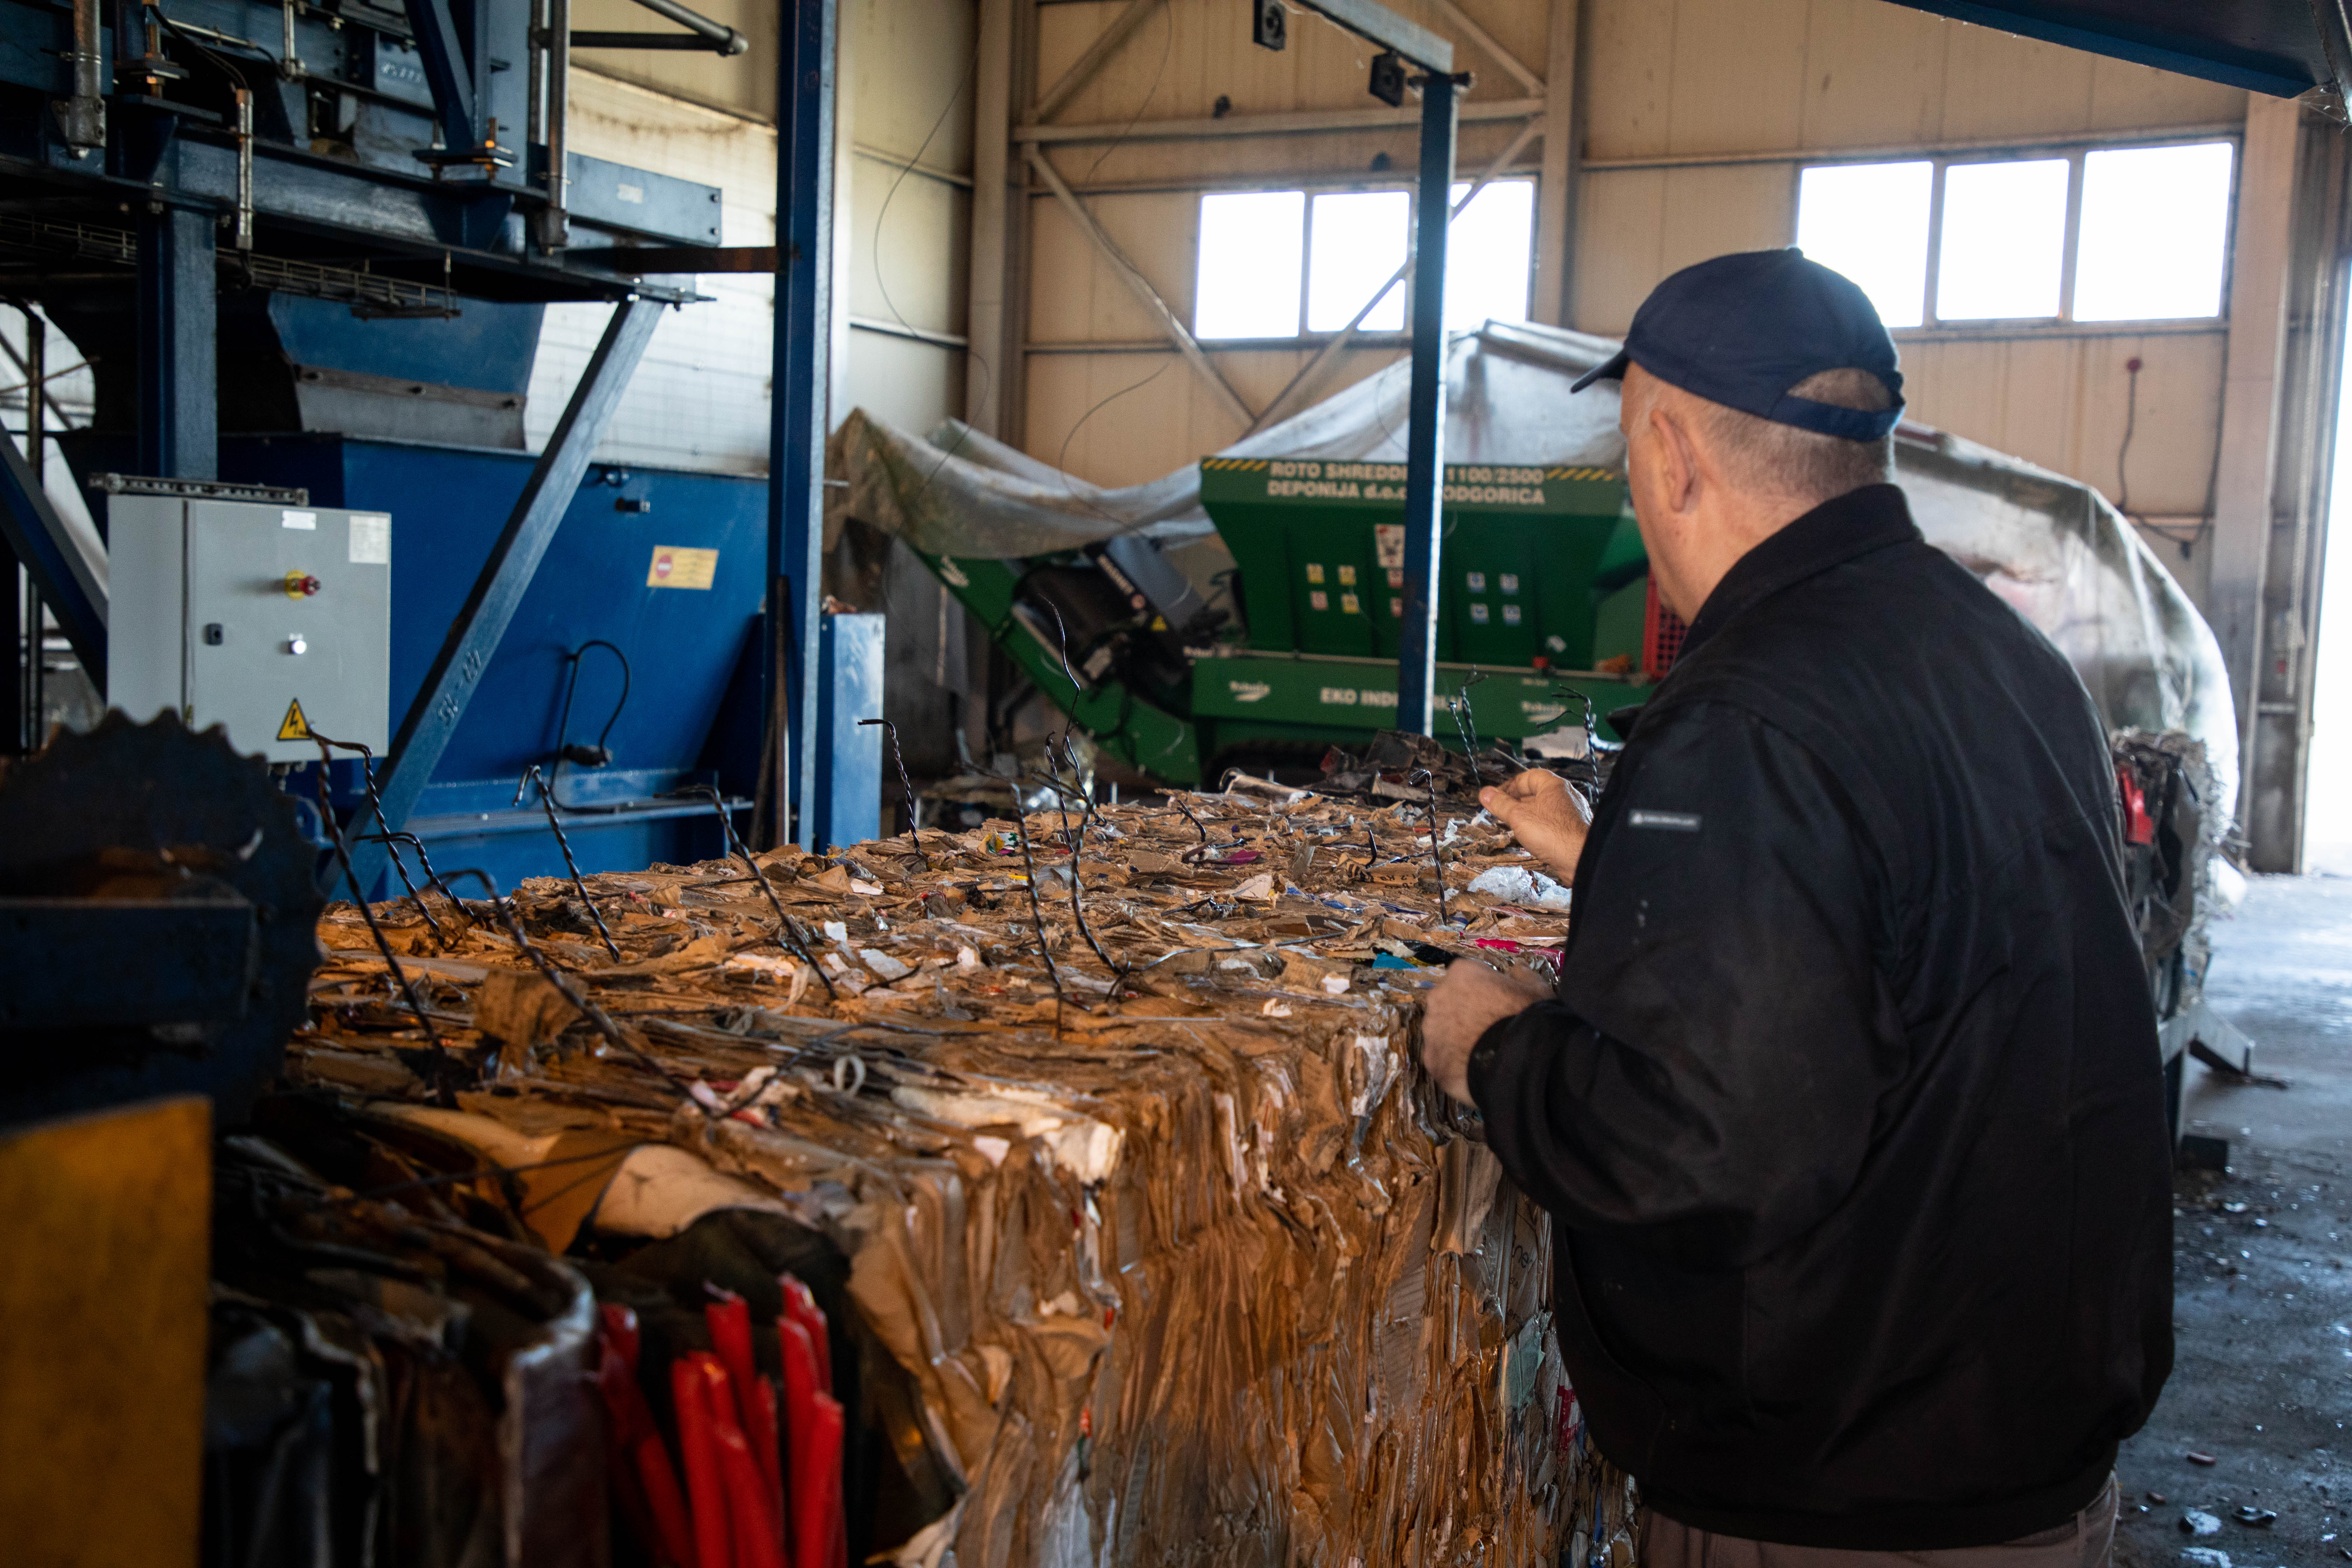 Regionalni reciklažni centar na Deponiji "Livade"  nastavlja da bilježi izuzetne rezultate